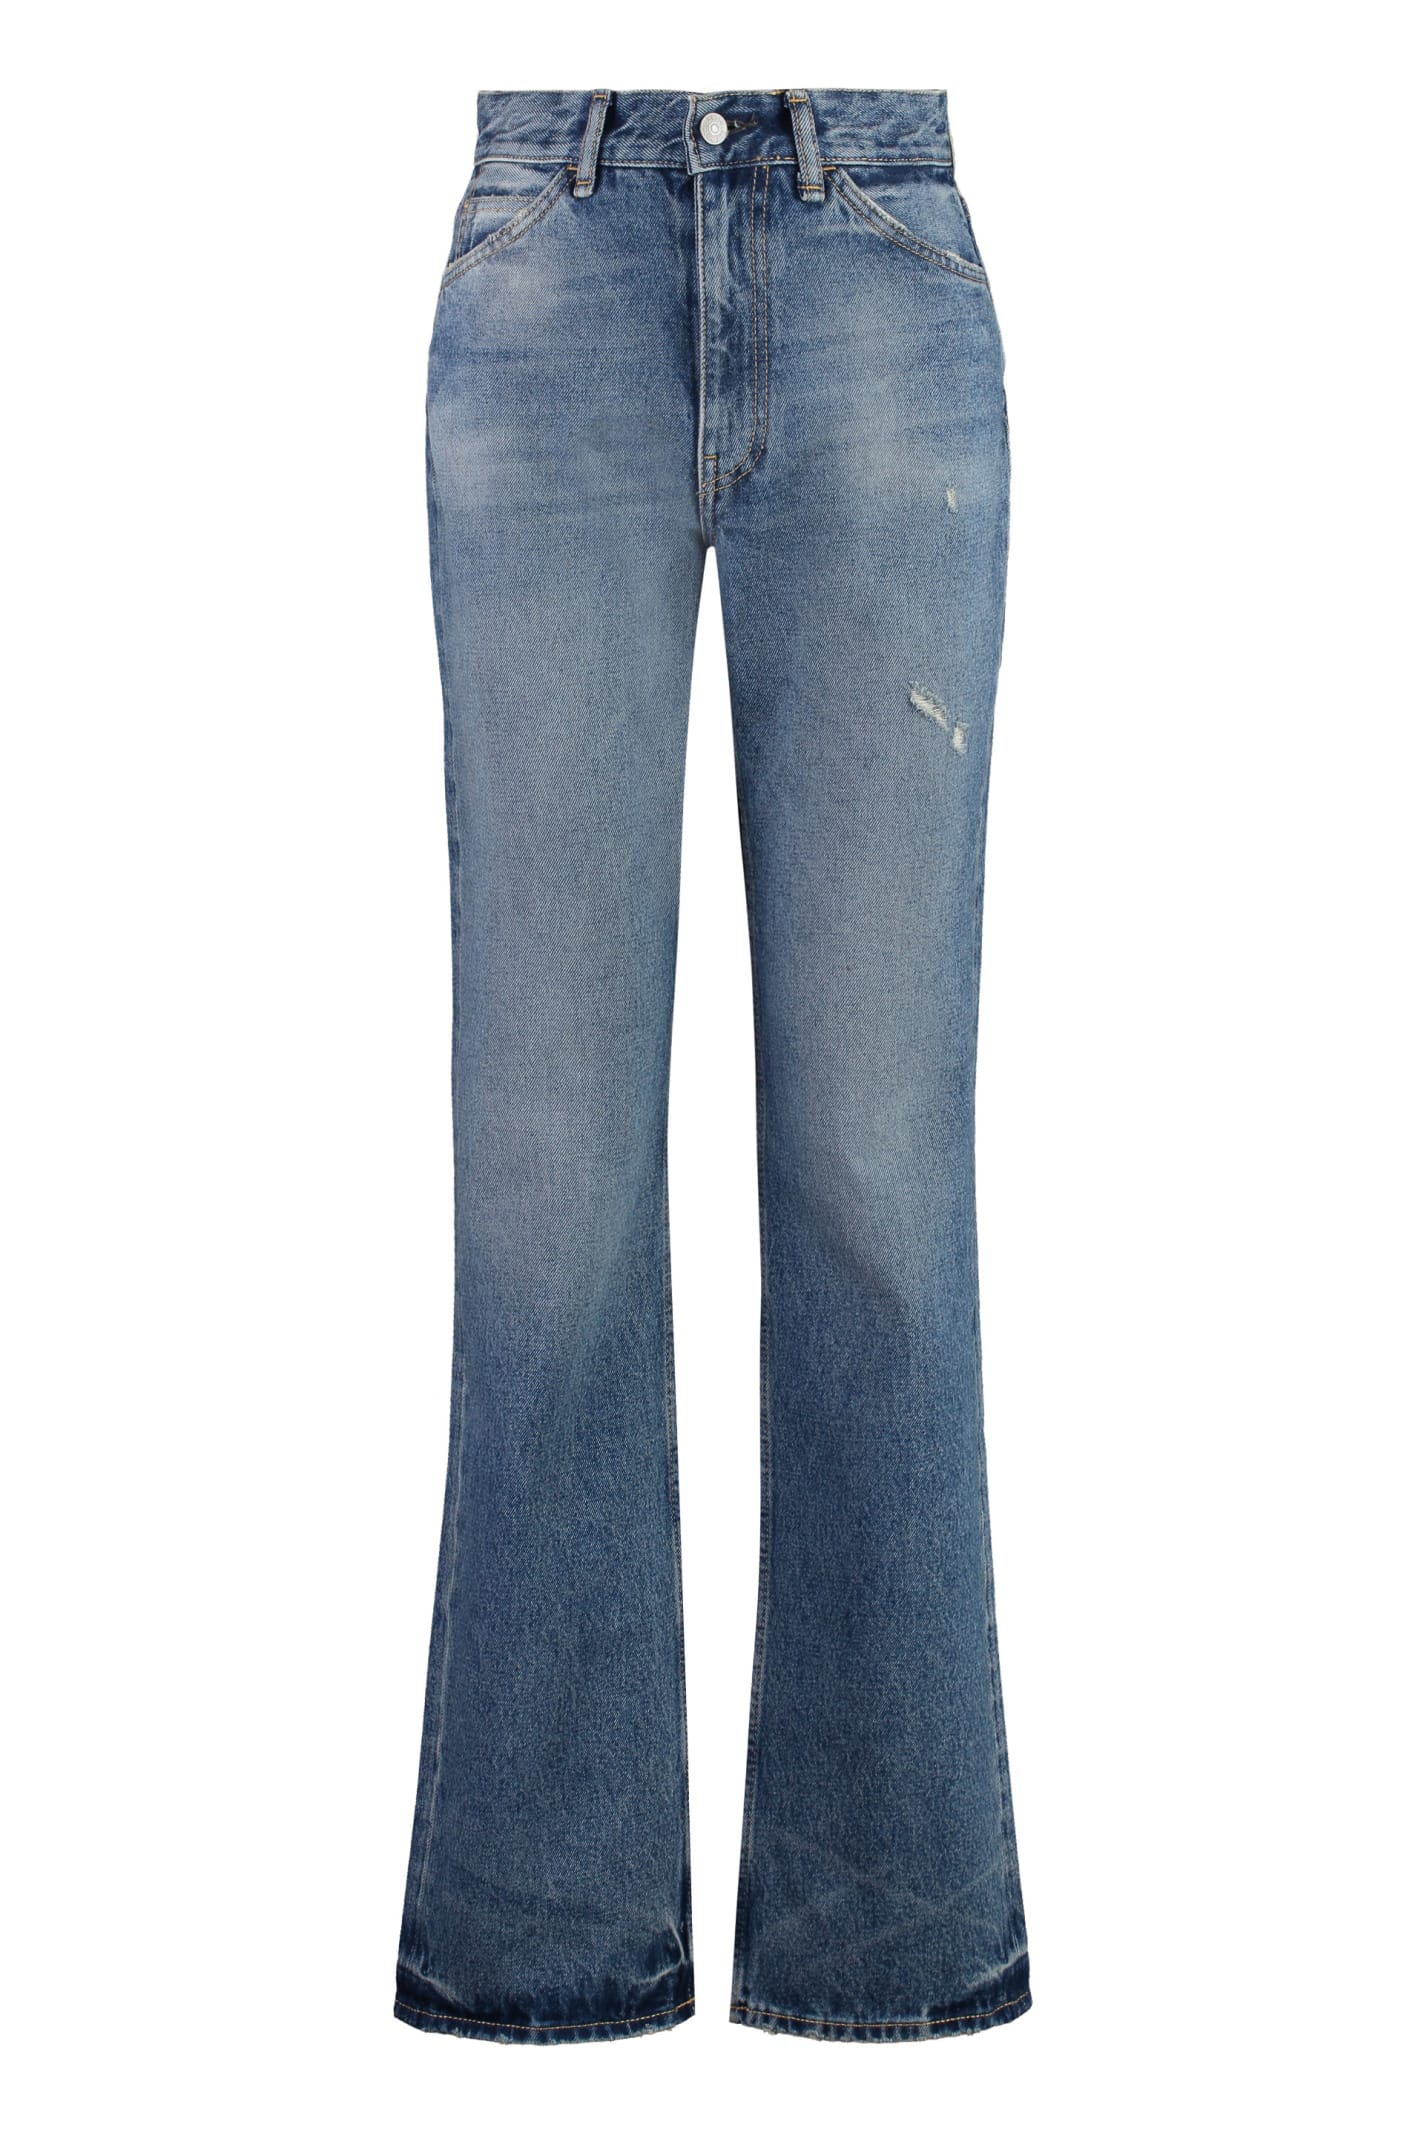 1977 Regular Fit Jeans